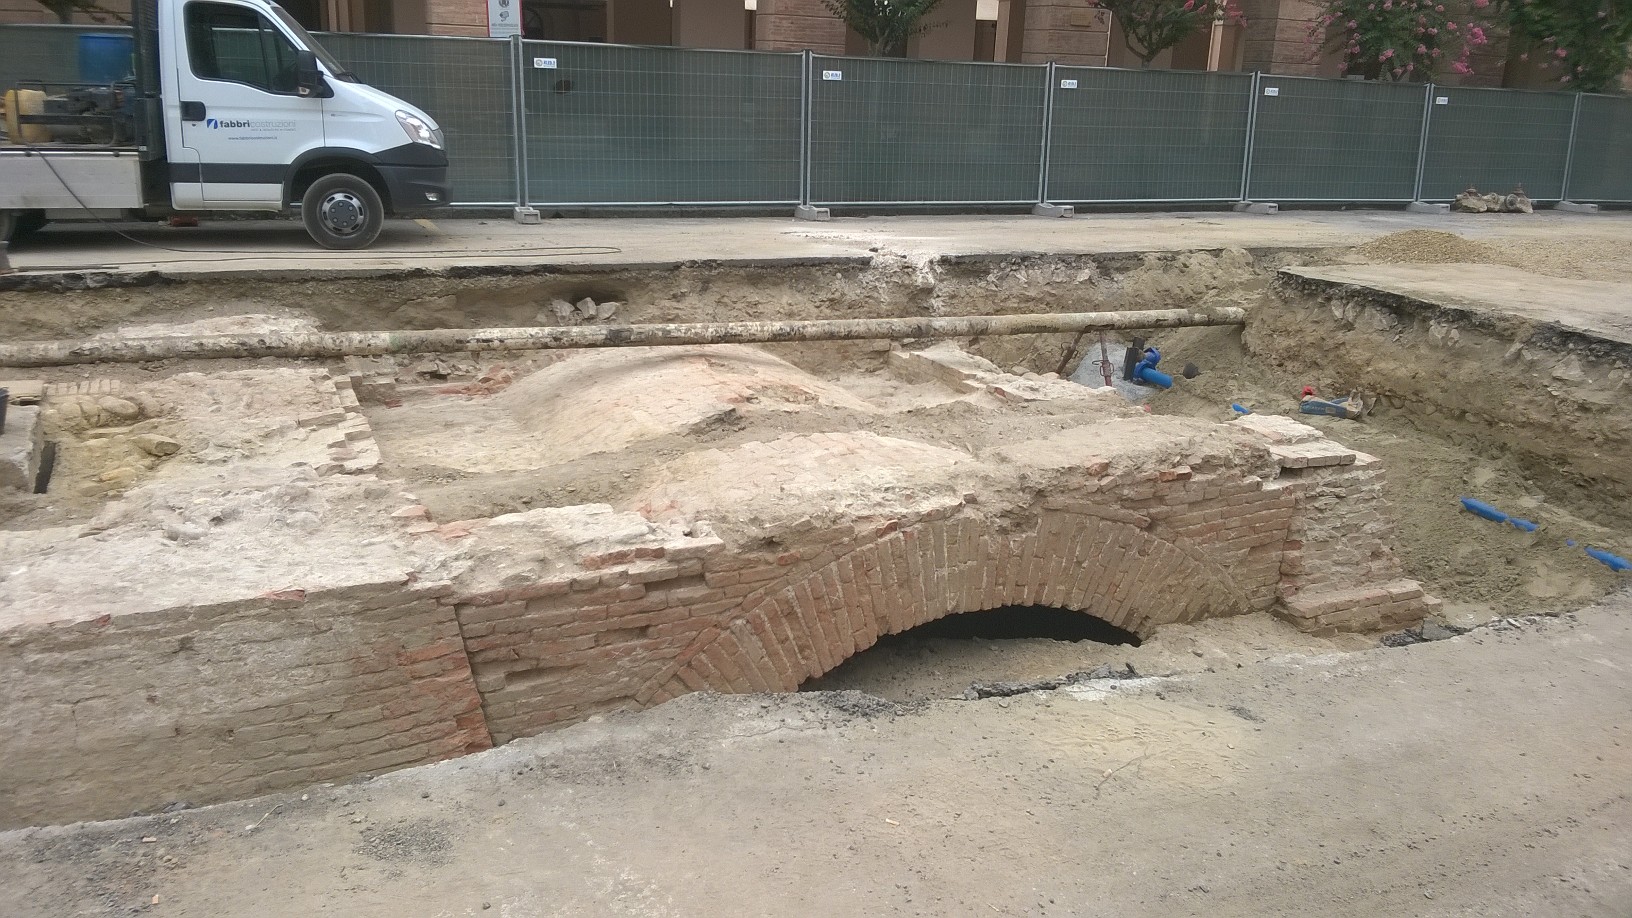 Dietrofront: i resti della Torre civica di Castel Bolognese tornano ... - Buonsenso@Faenza (Comunicati Stampa) (Registrazione) (Blog)